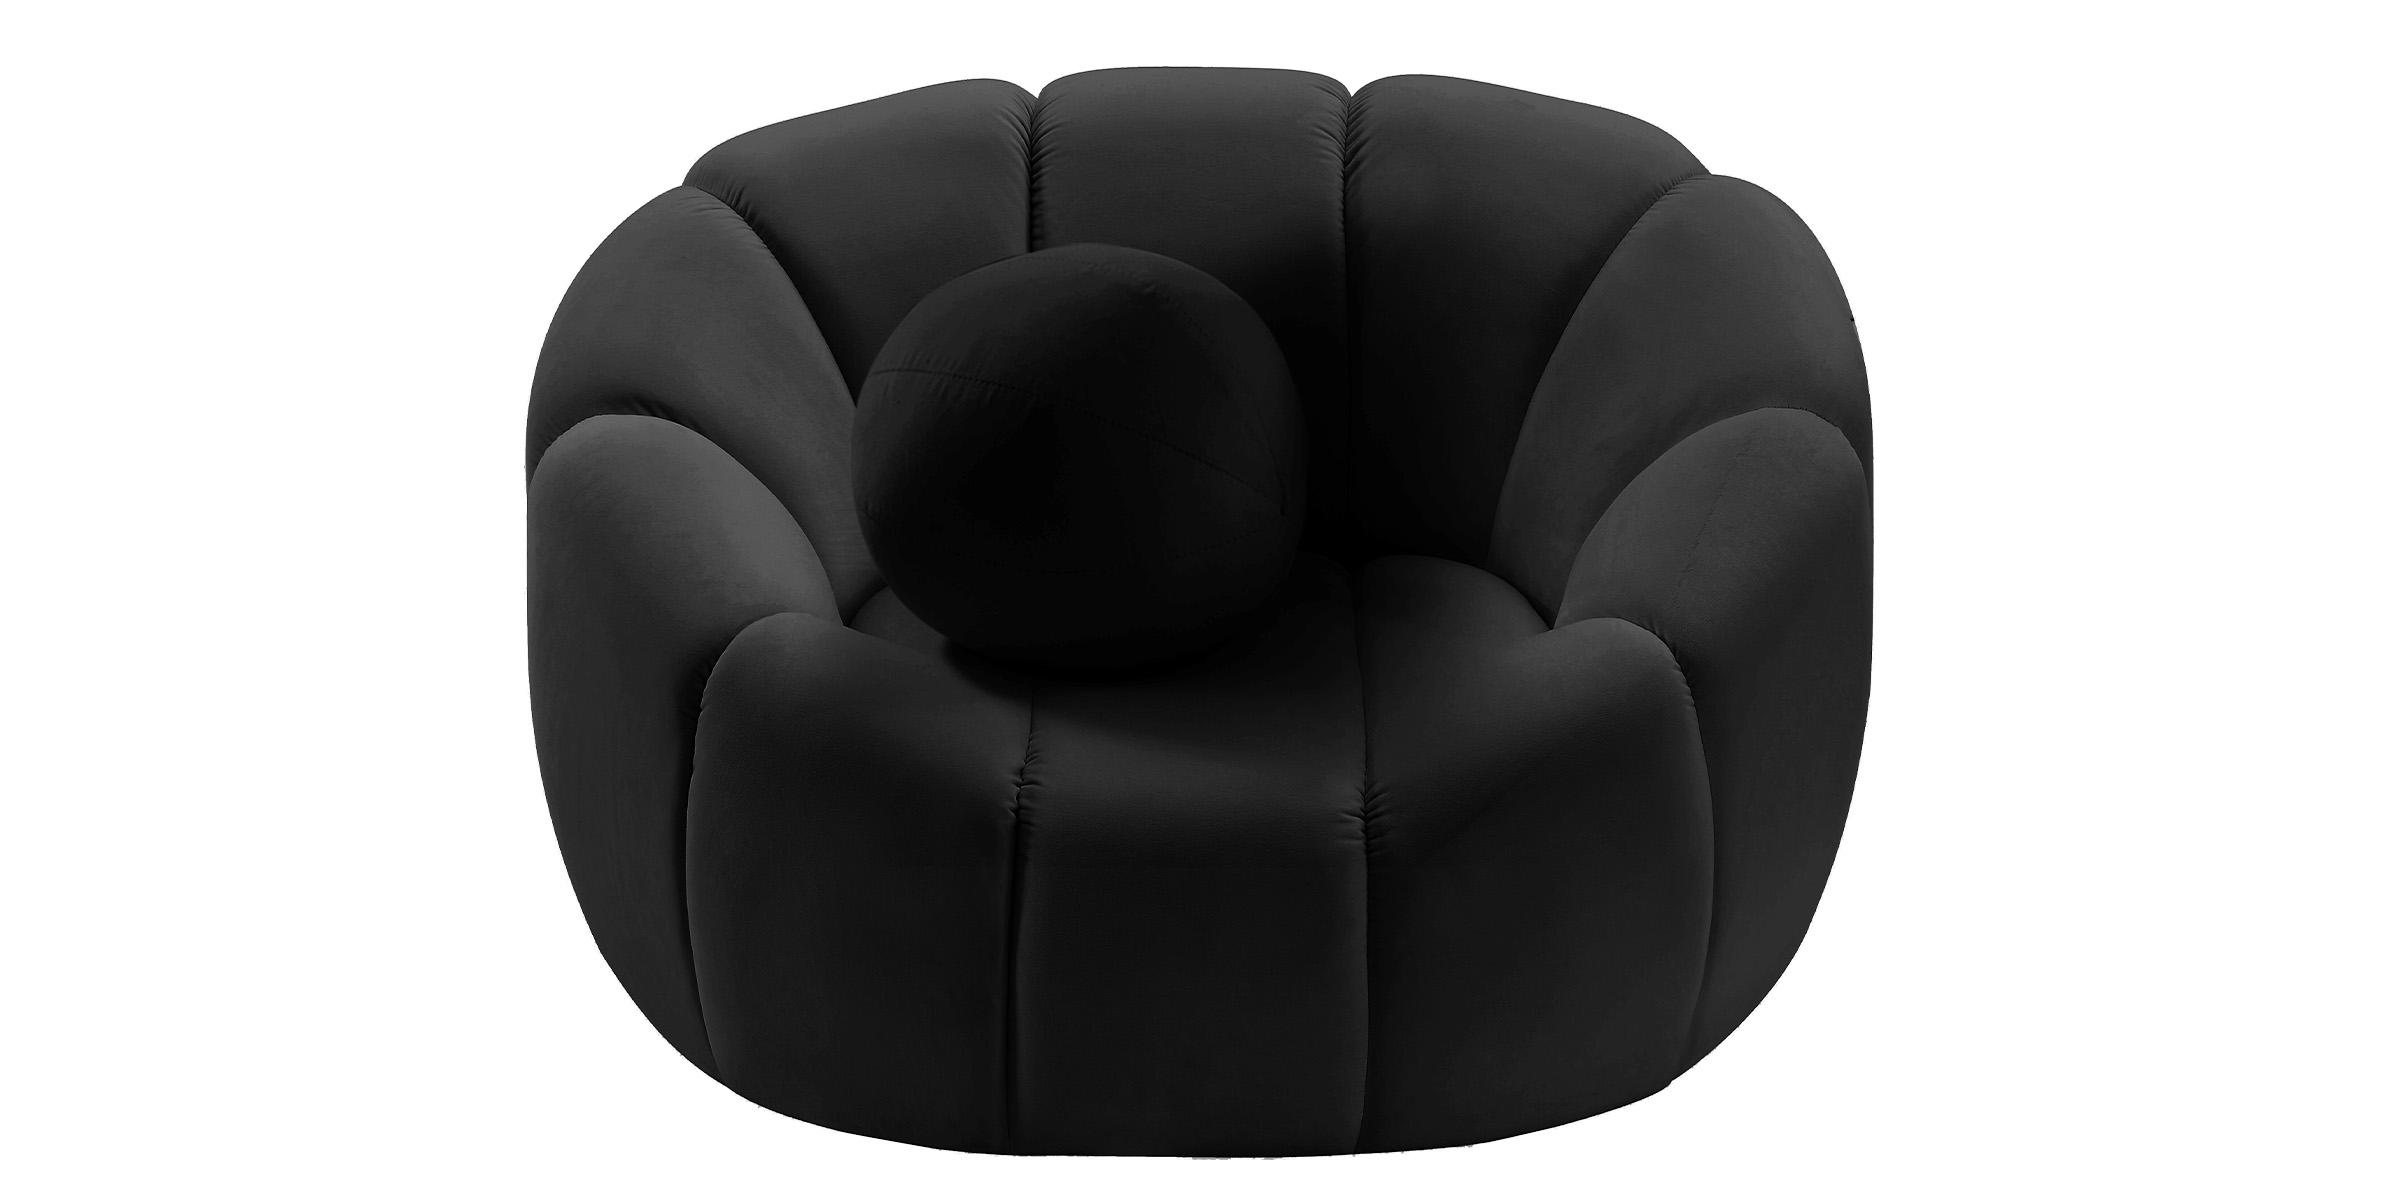 

    
Glam BLACK Velvet Channel Tufted Chair ELIJAH 613Black-C Meridian Modern
